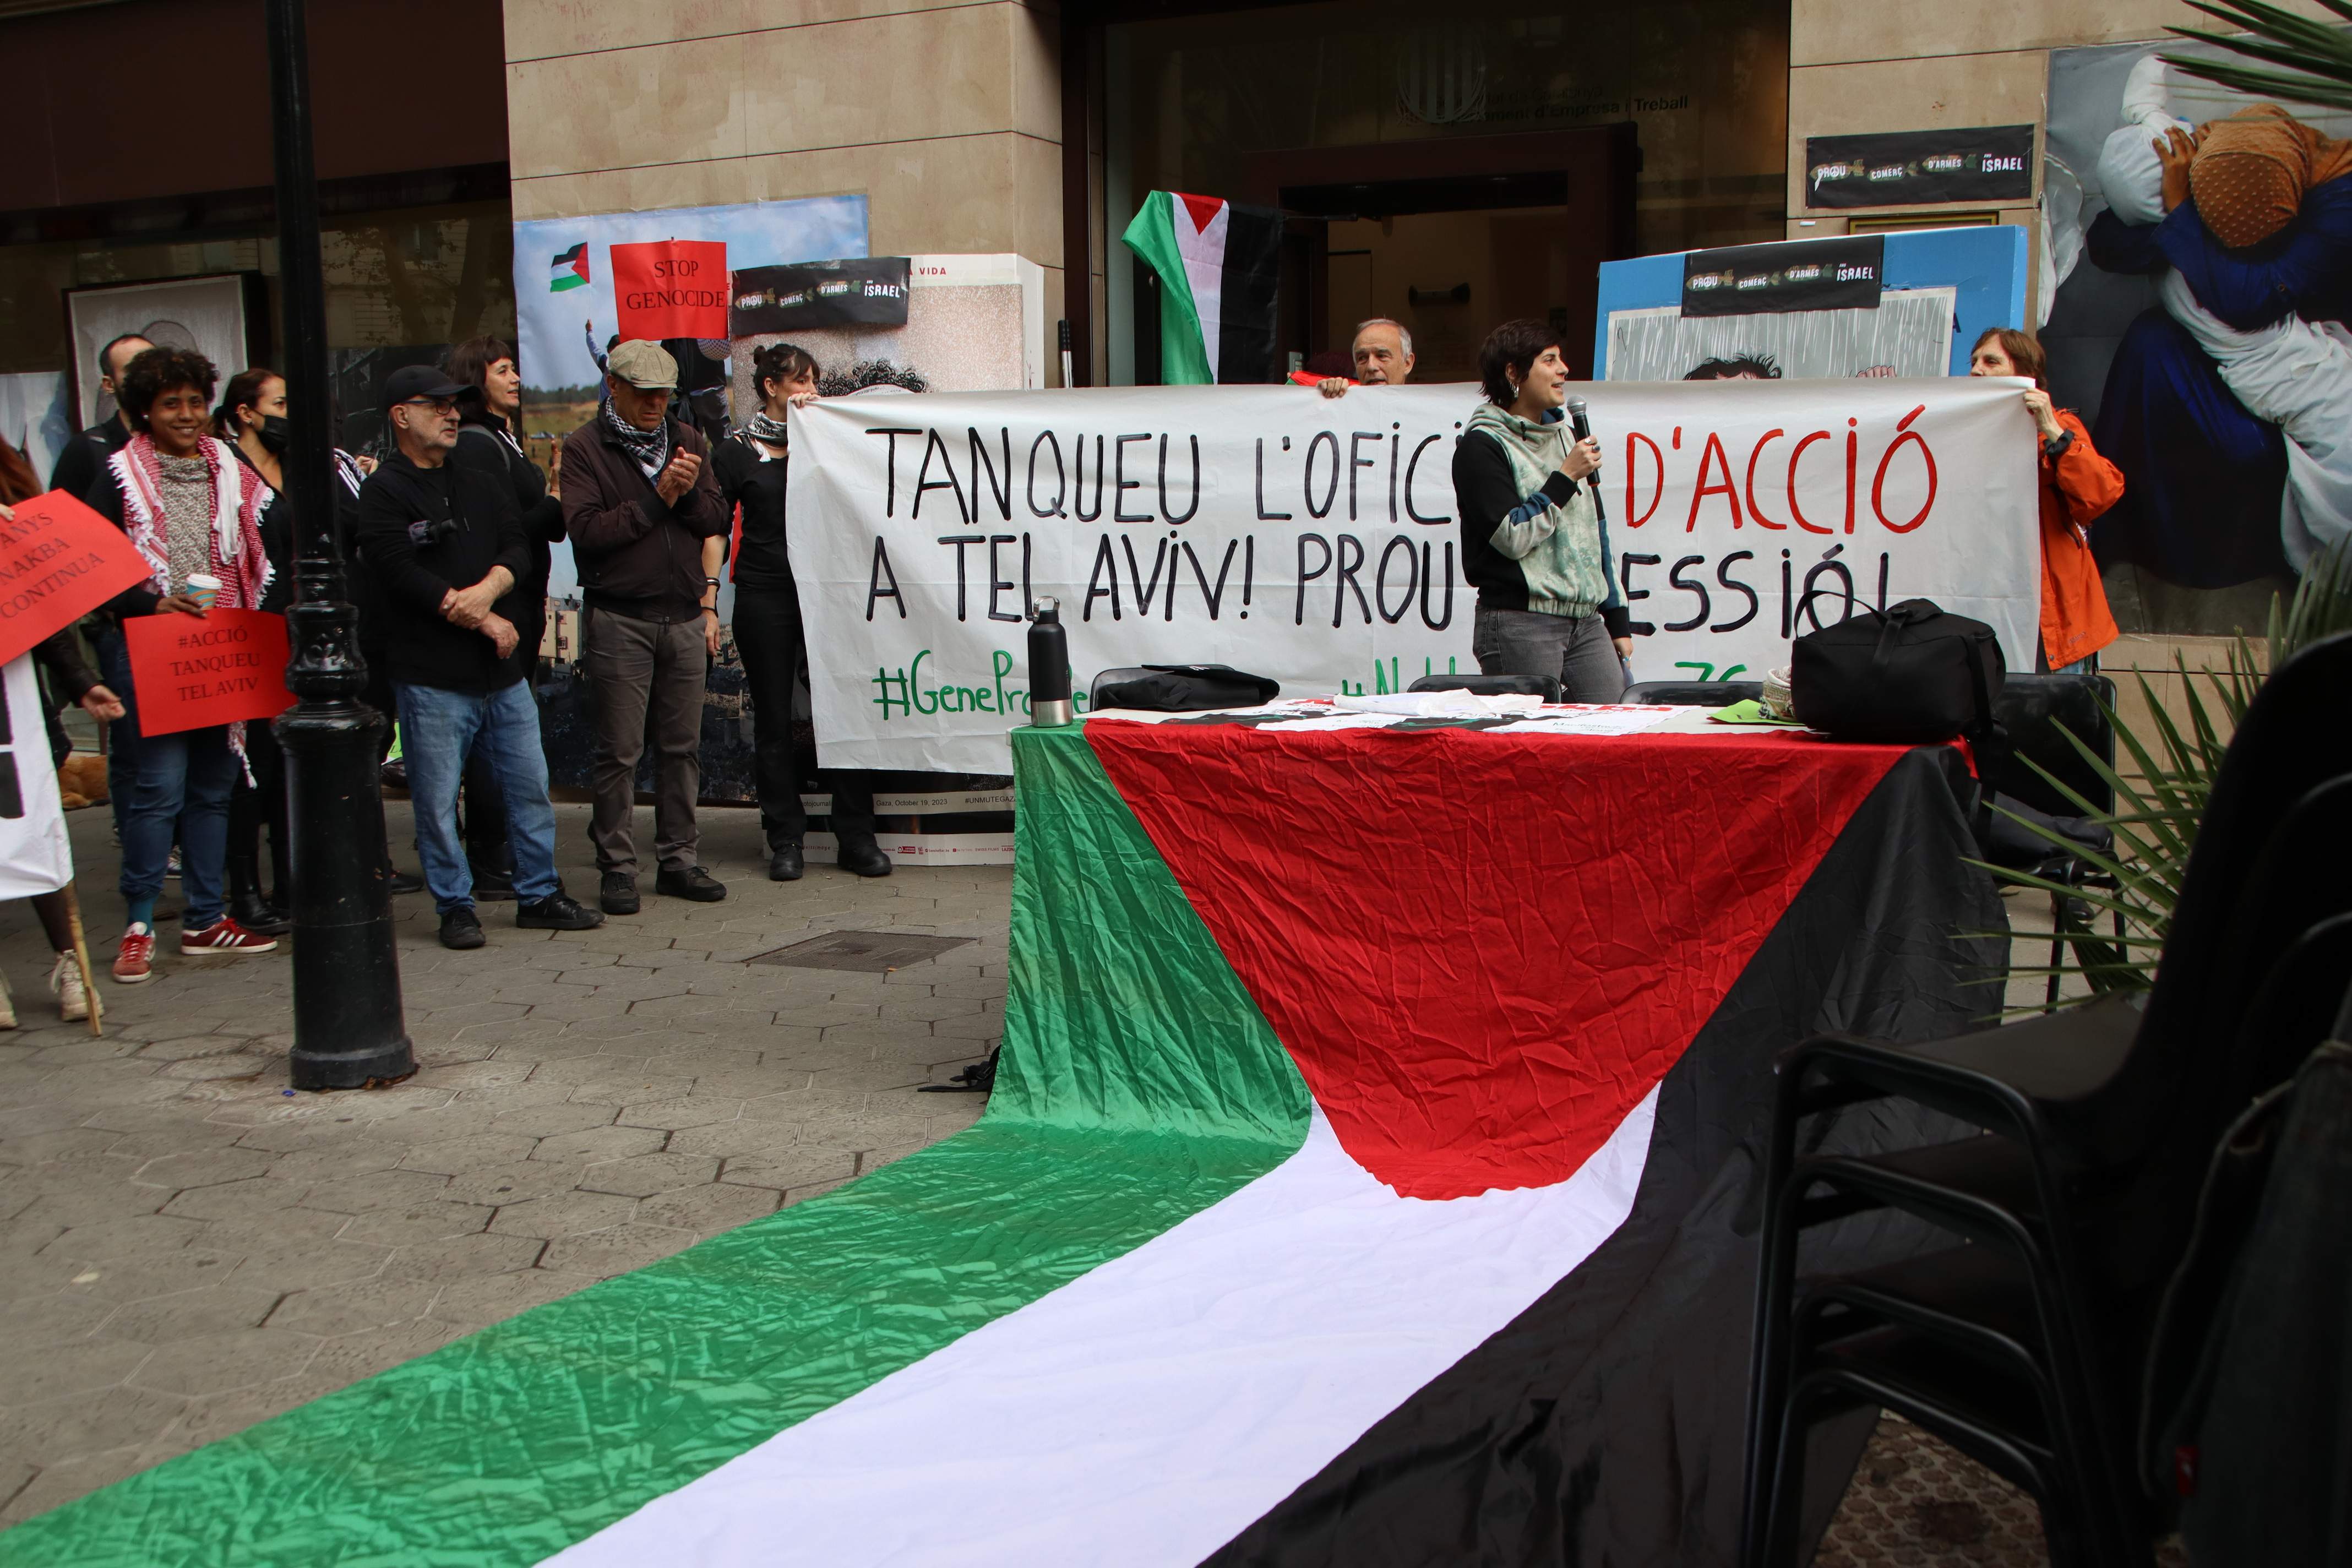 Activistes ocupen la seu d’ACCIÓ per exigir el trencament de relacions amb Israel